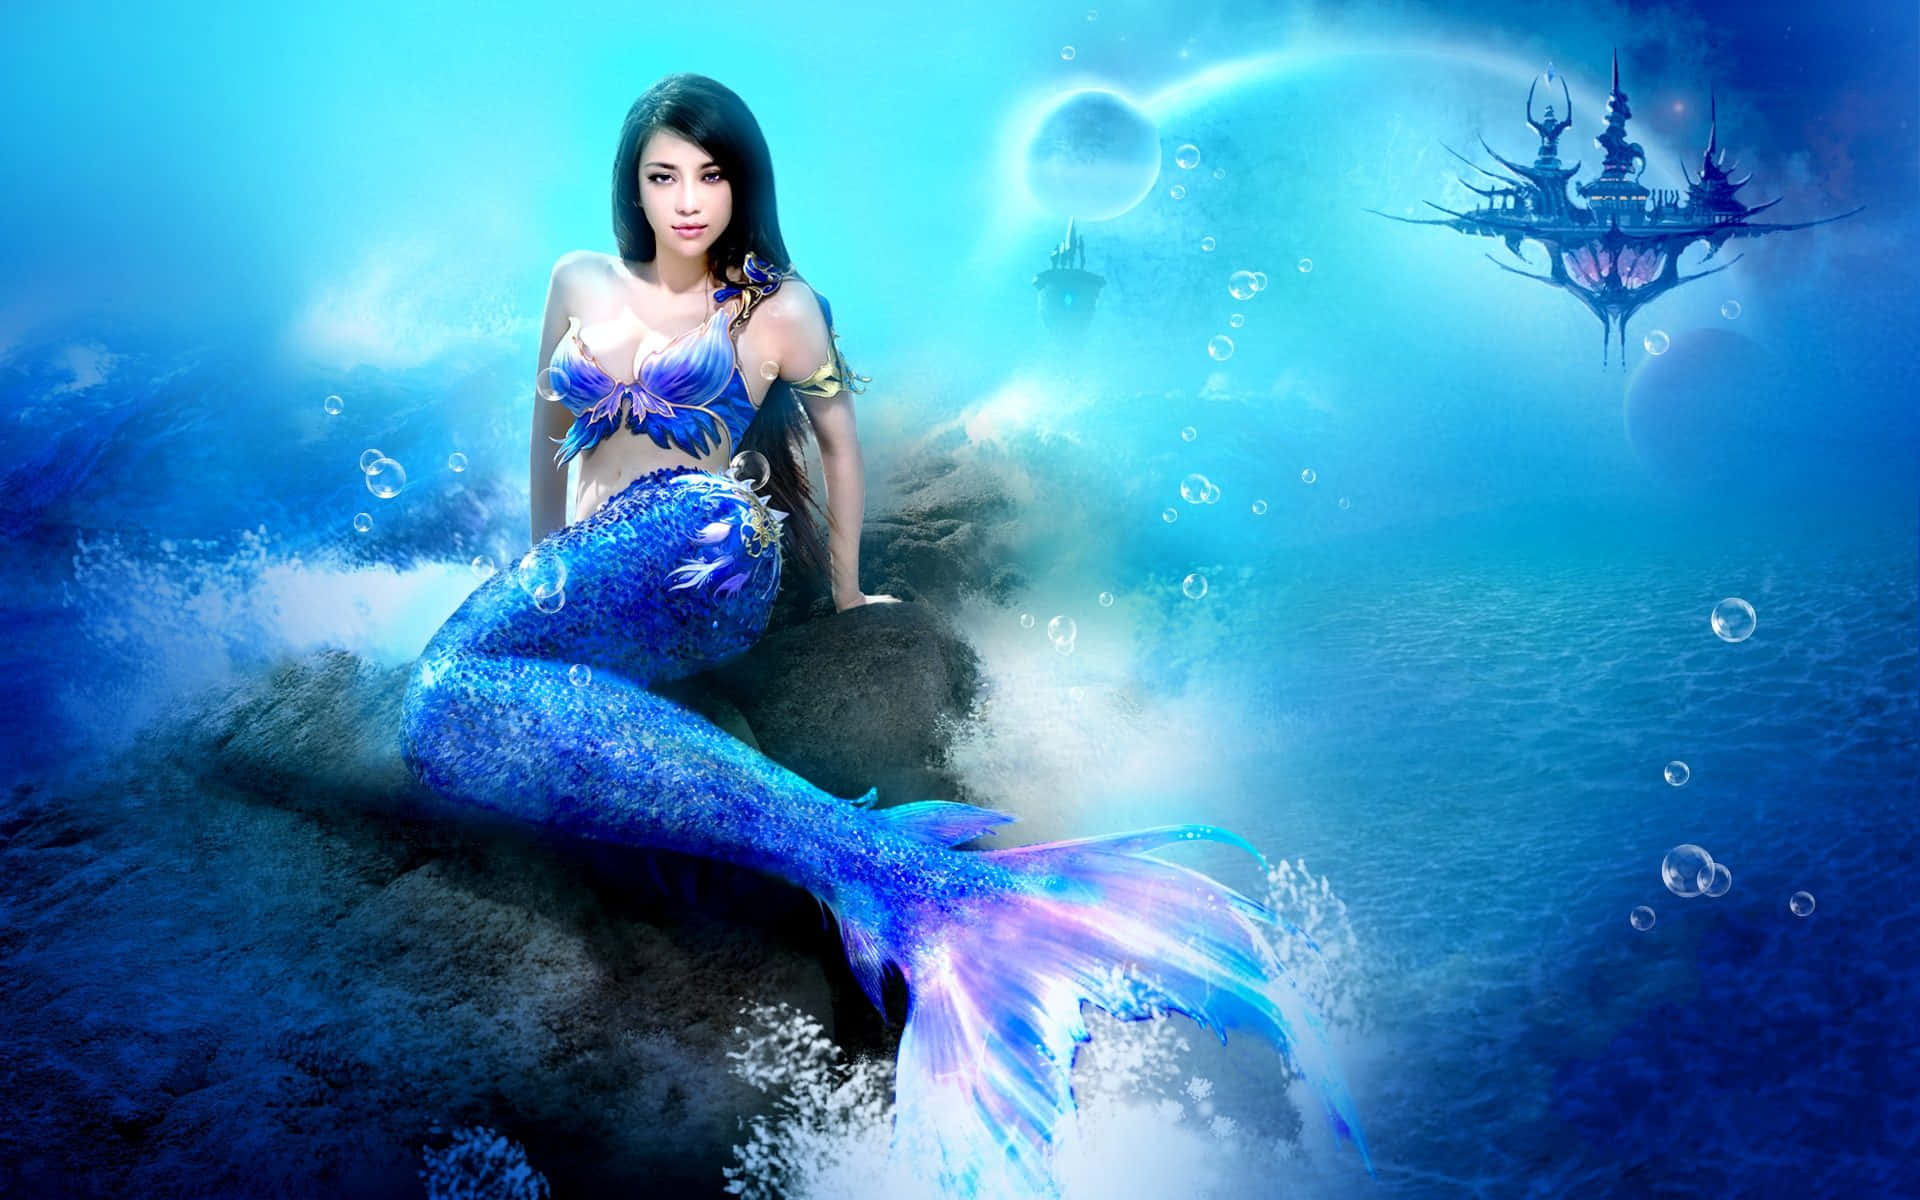 A Mermaid in a Mystical Ocean Paradise